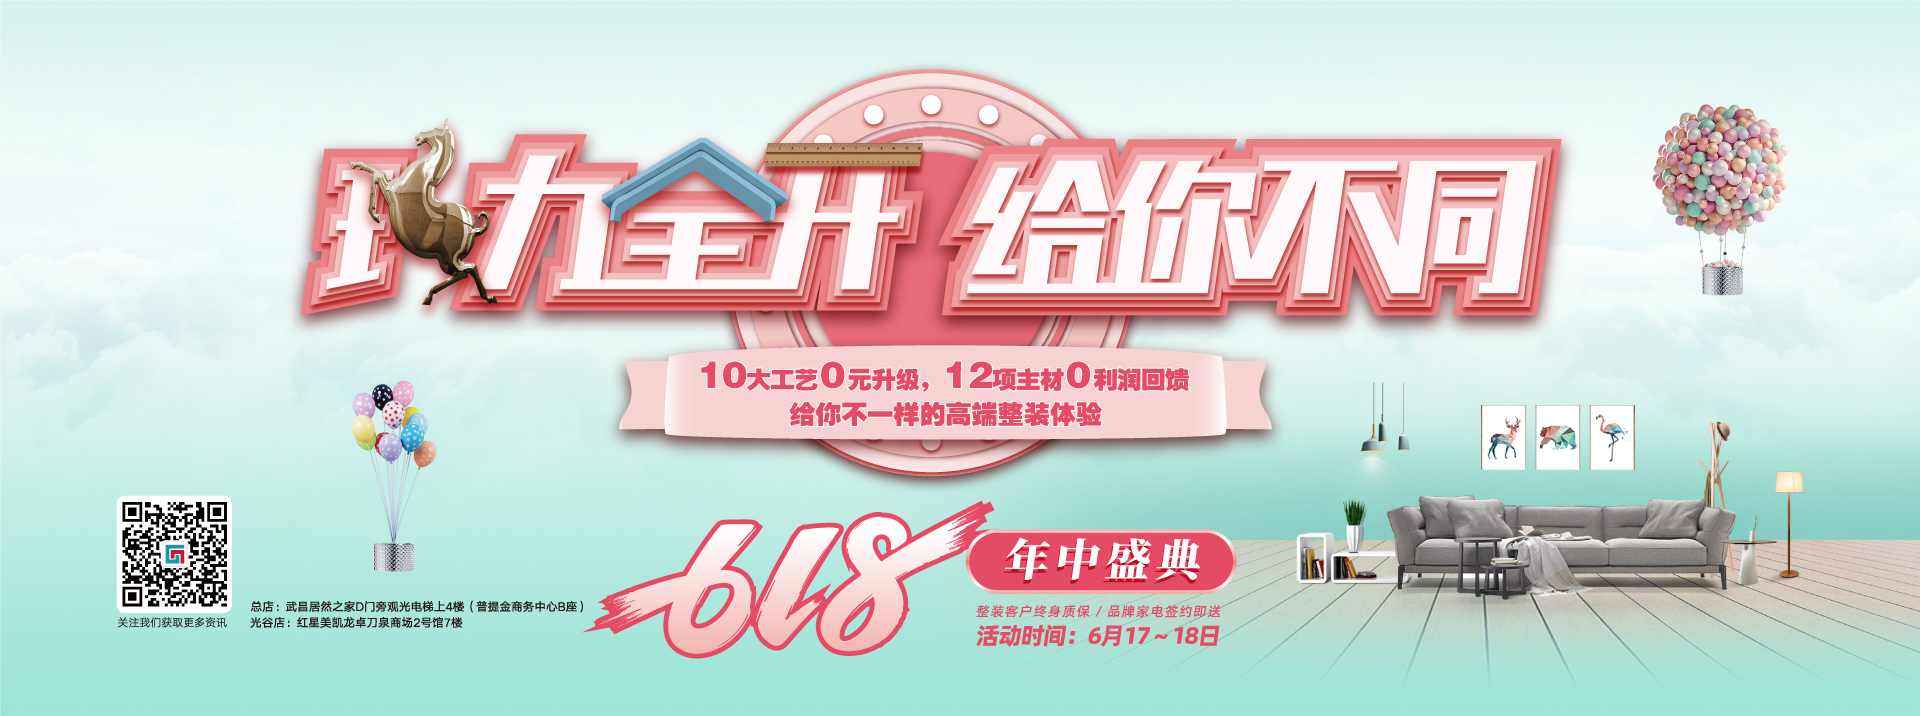 韩国三级车震六西格玛装饰活动海报